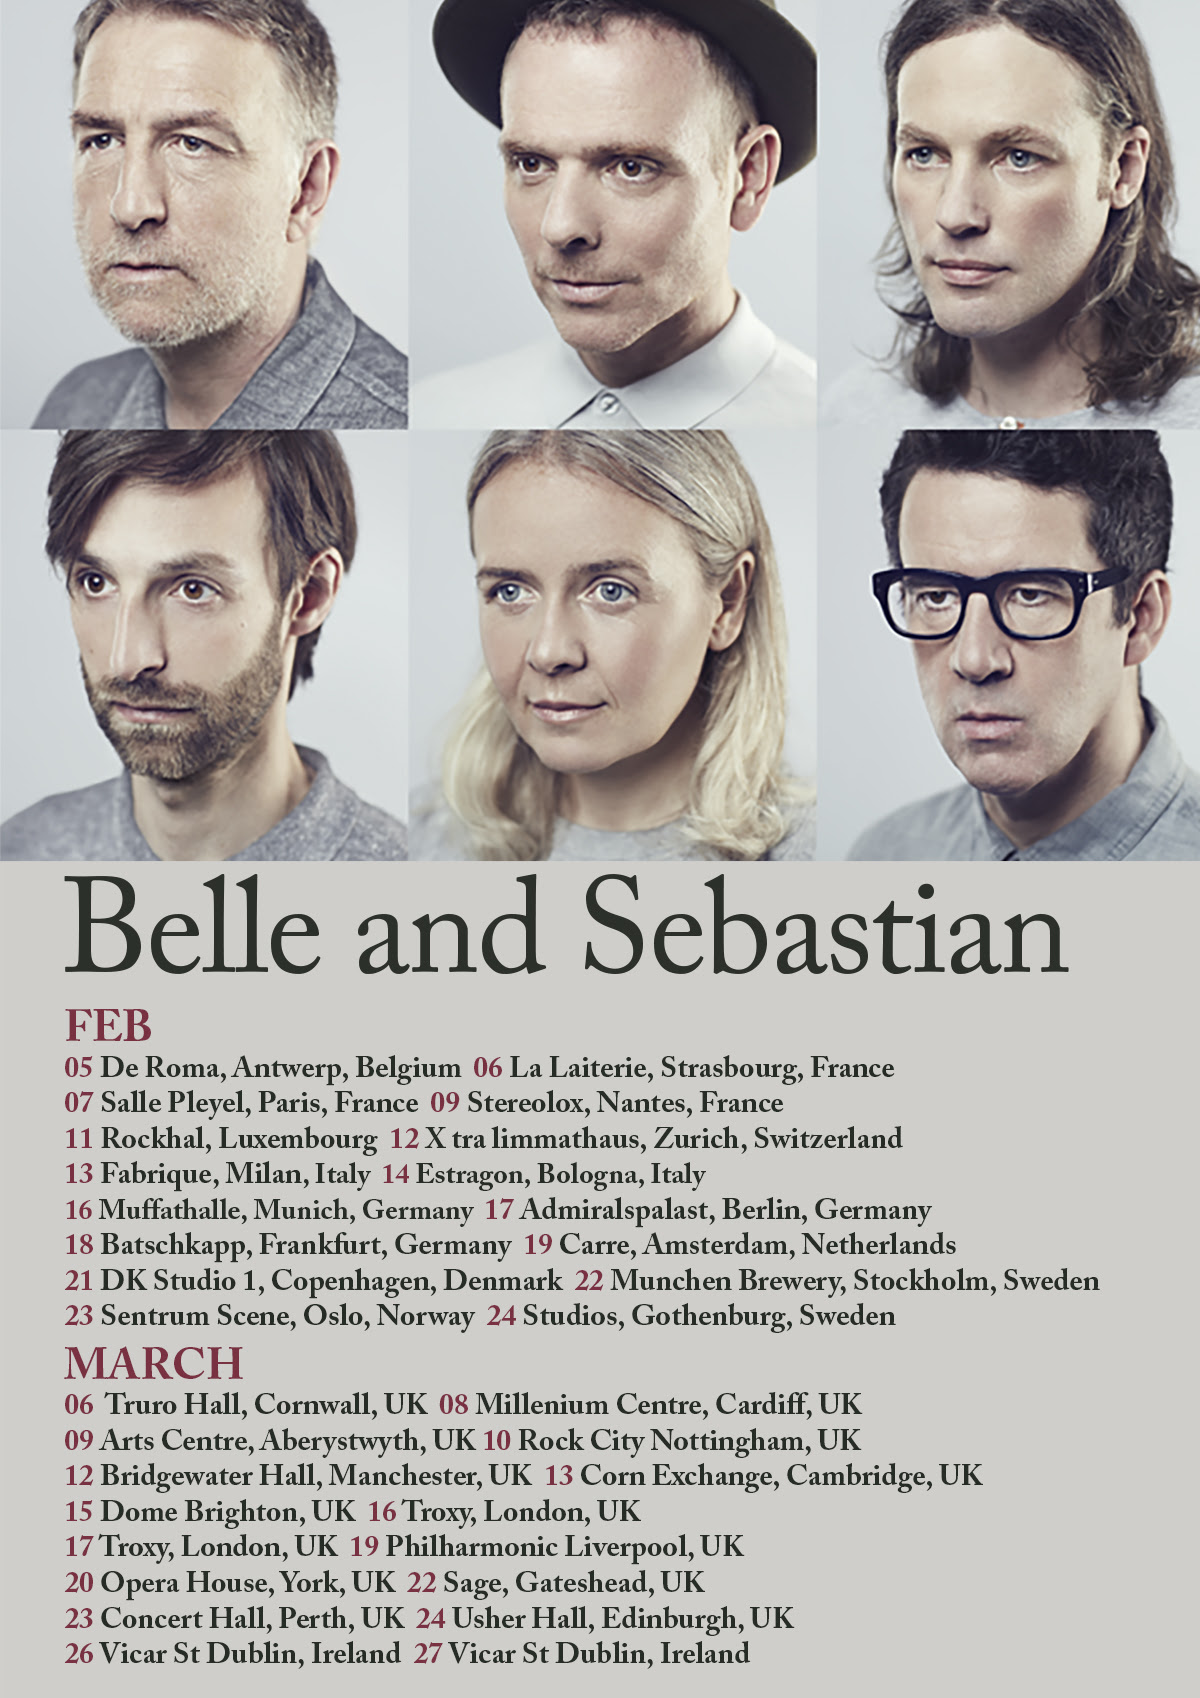 belle and sebastian tour 2022 uk